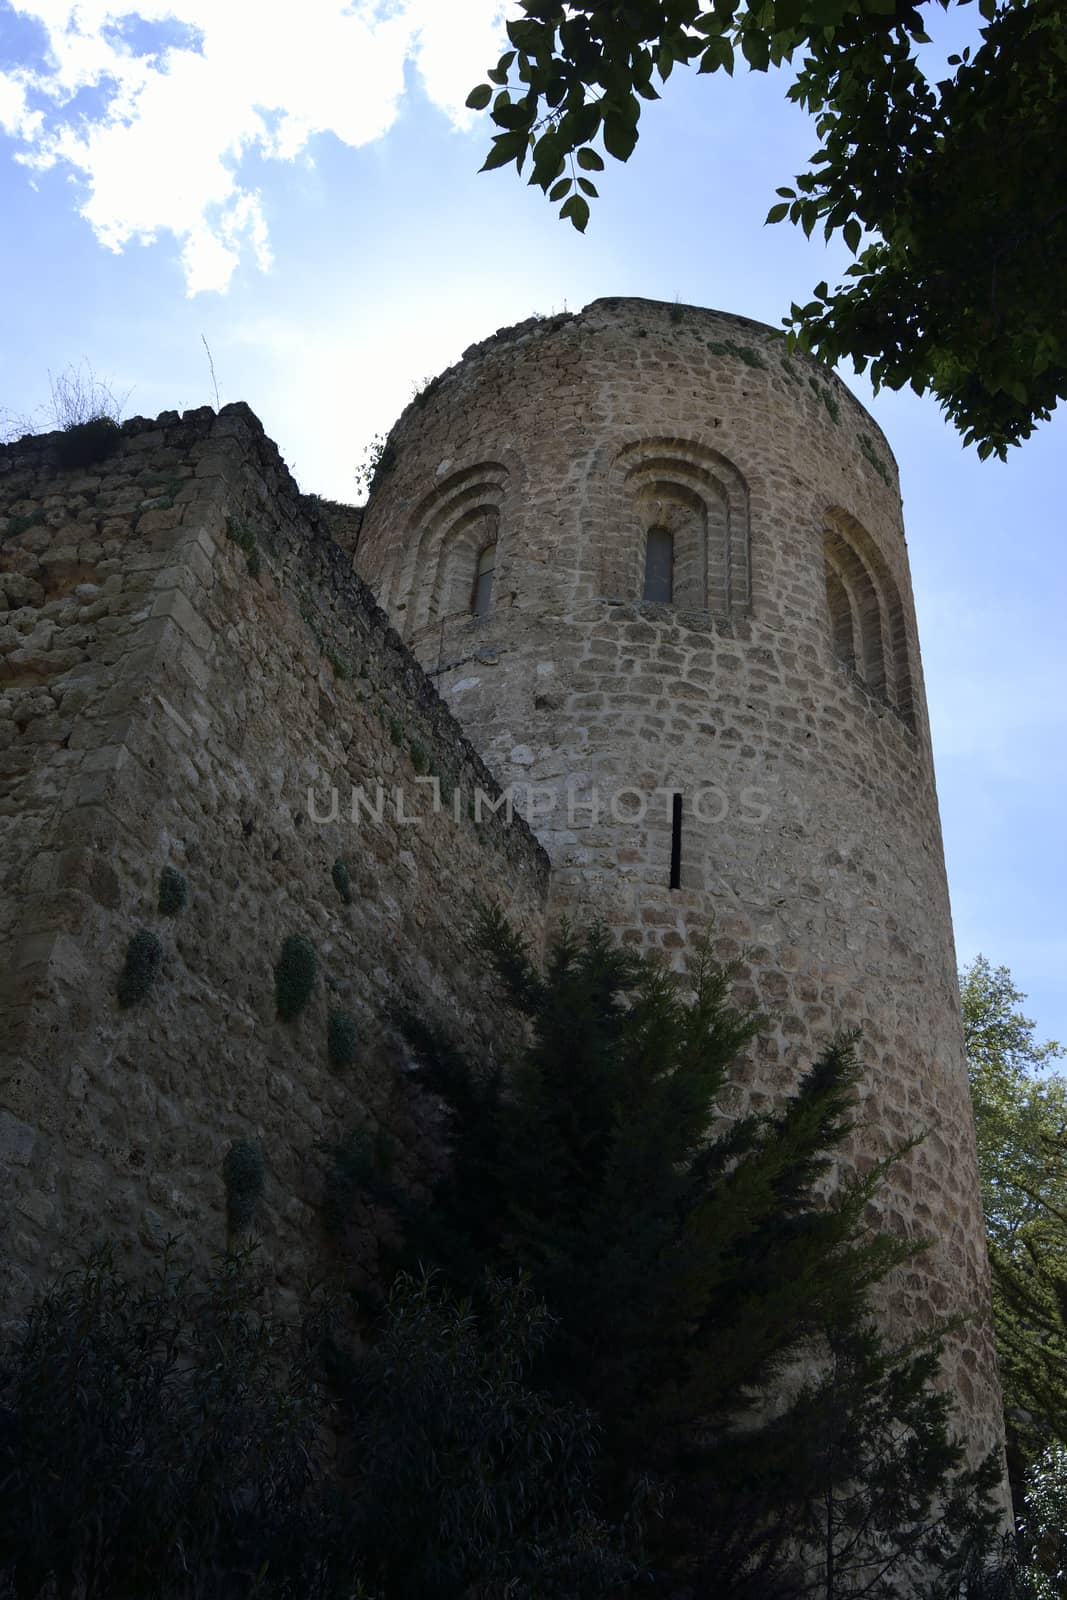 Tower of Brihuega castle, Spain. by ncuisinier